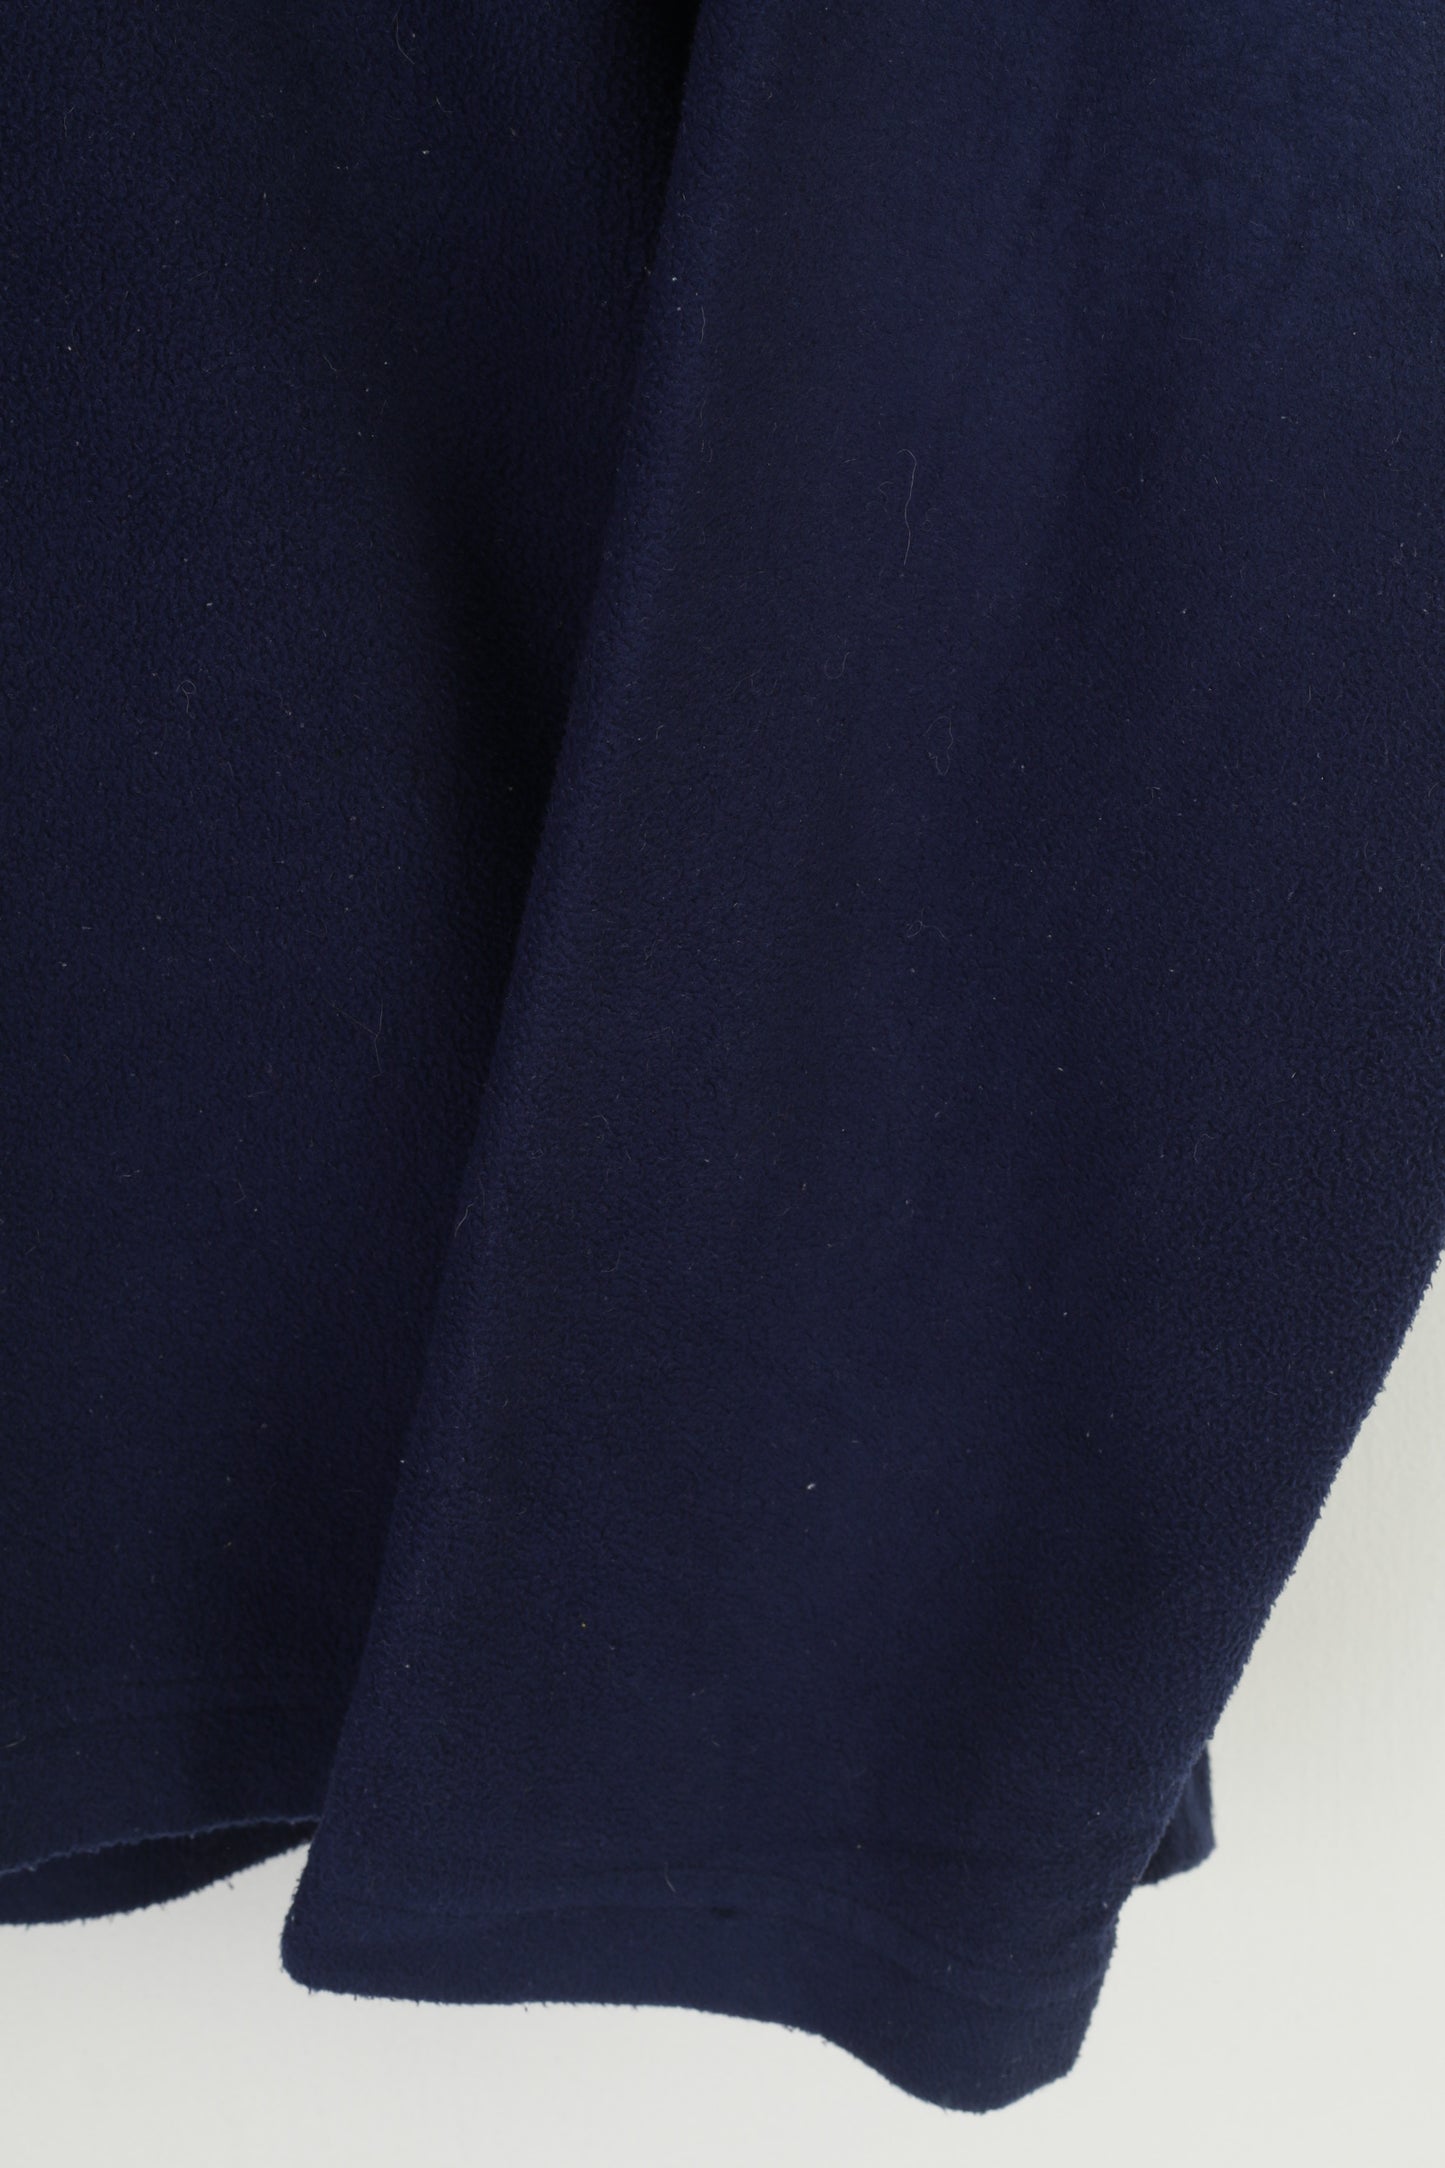 Sprayway Uomo L Felpa in pile Blu scuro con zip Collo Abbigliamento sportivo Colletto imbottito Top vintage